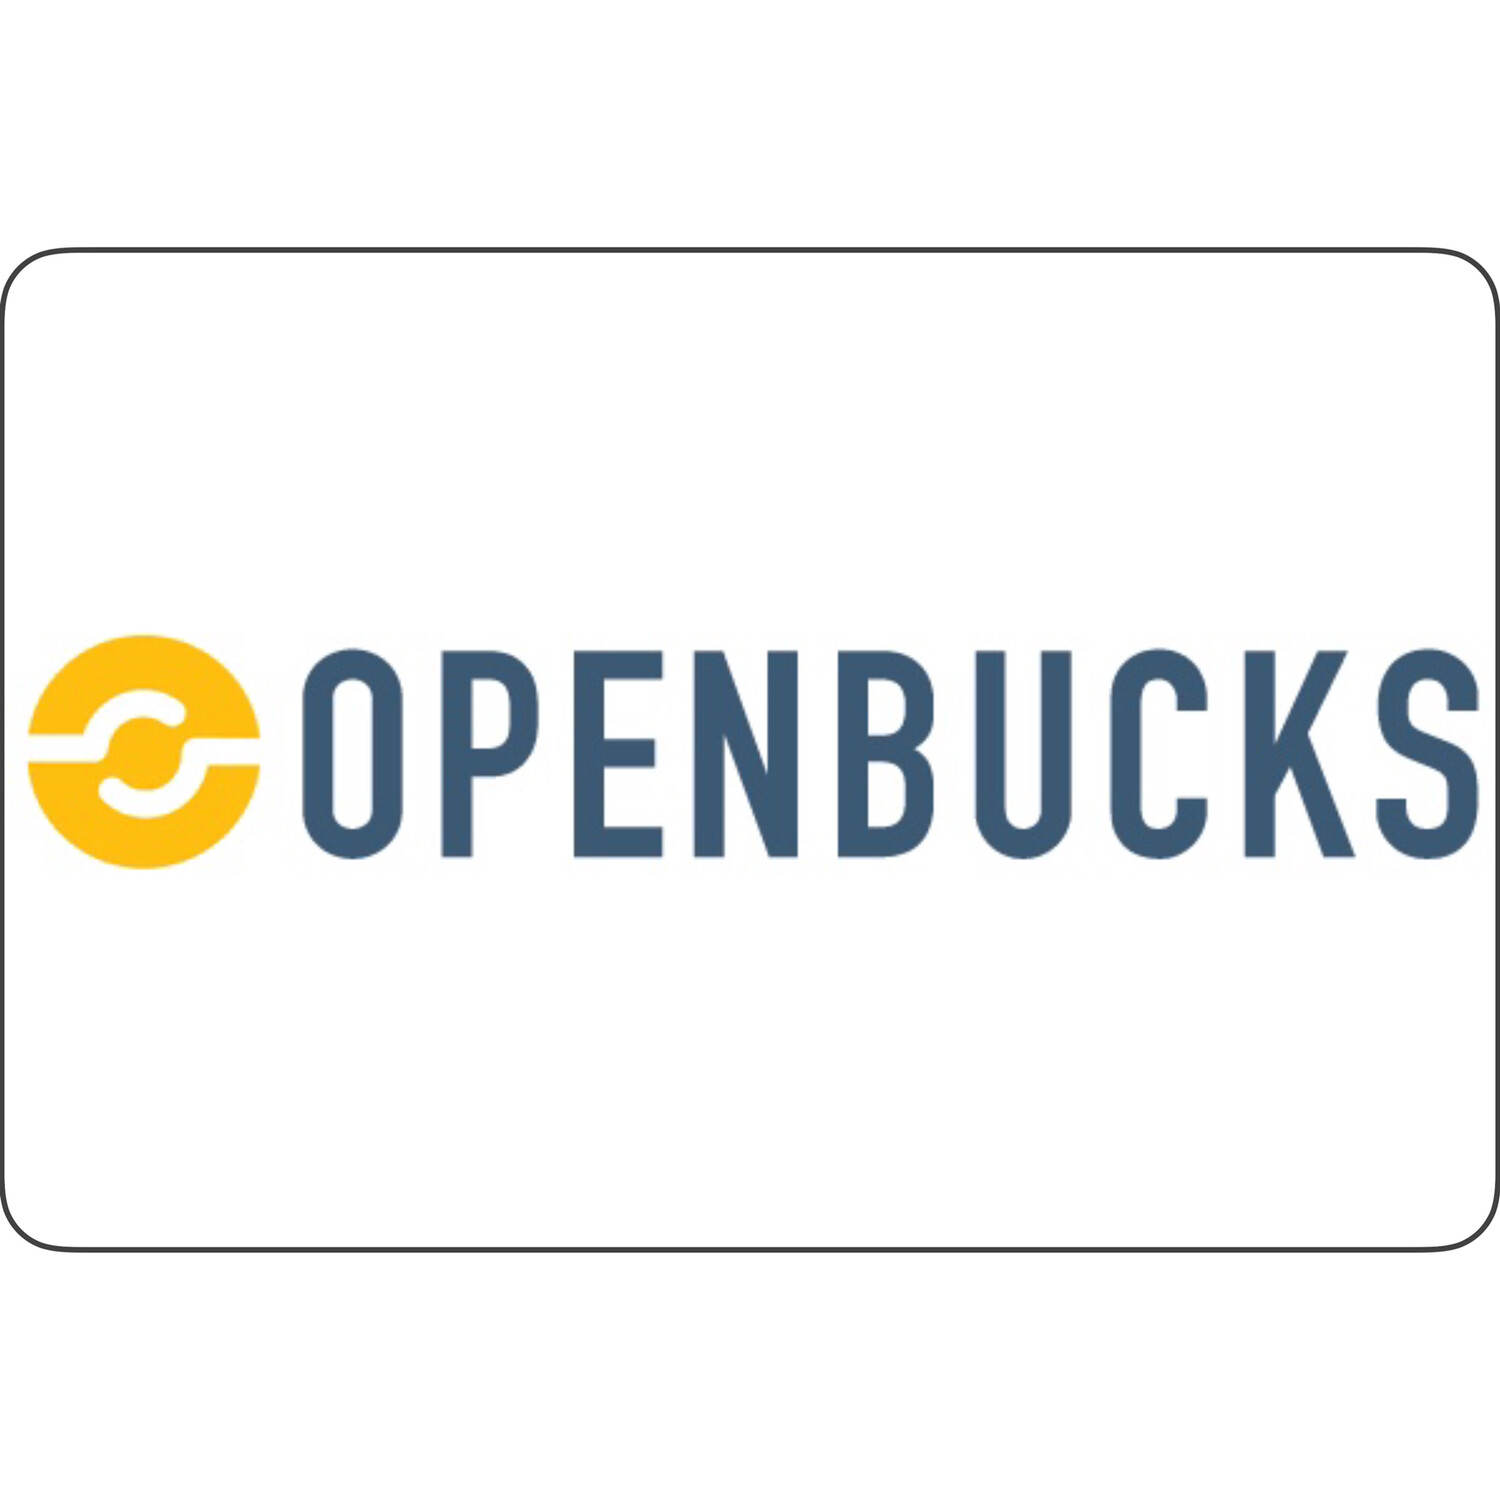 Openbucks (Obucks)